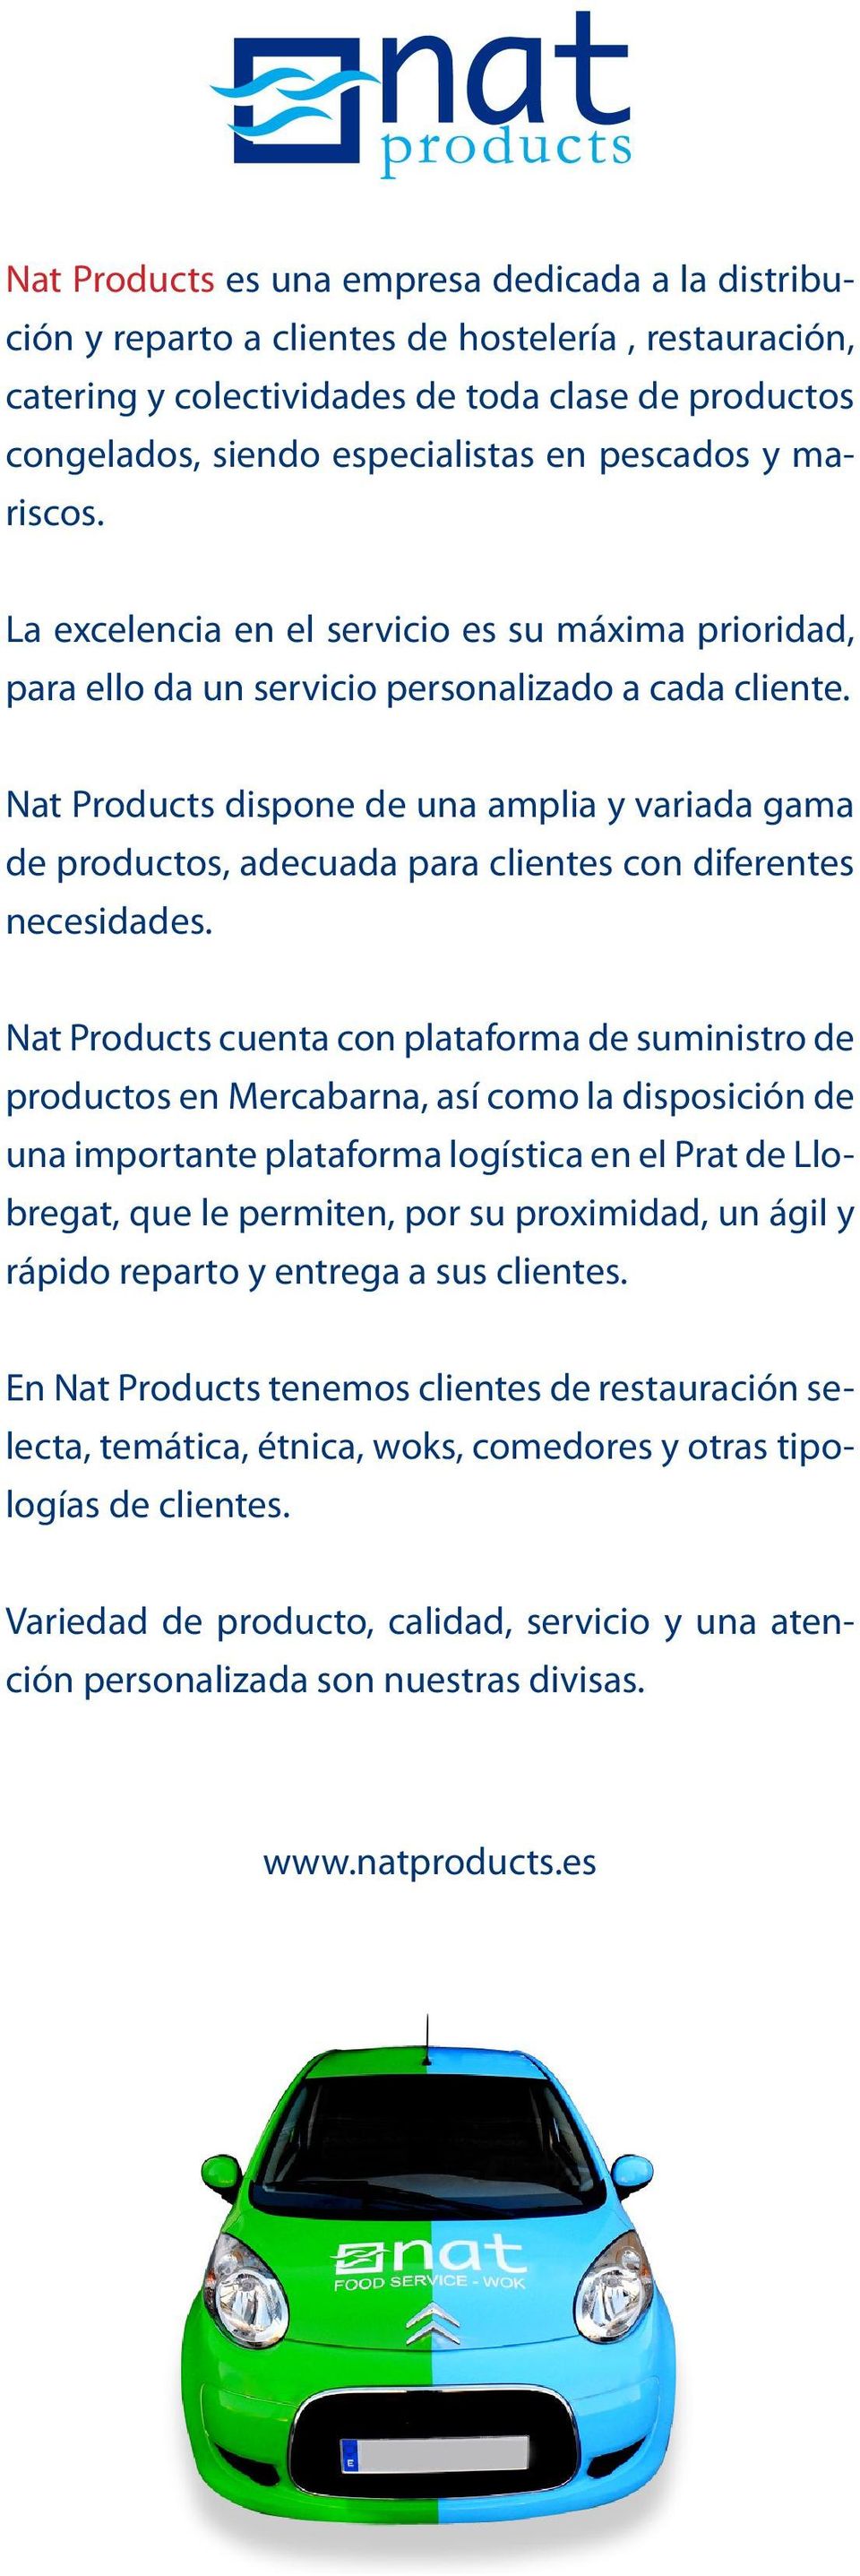 Nat Products dispone de una amplia y variada gama de productos, adecuada para clientes con diferentes necesidades.